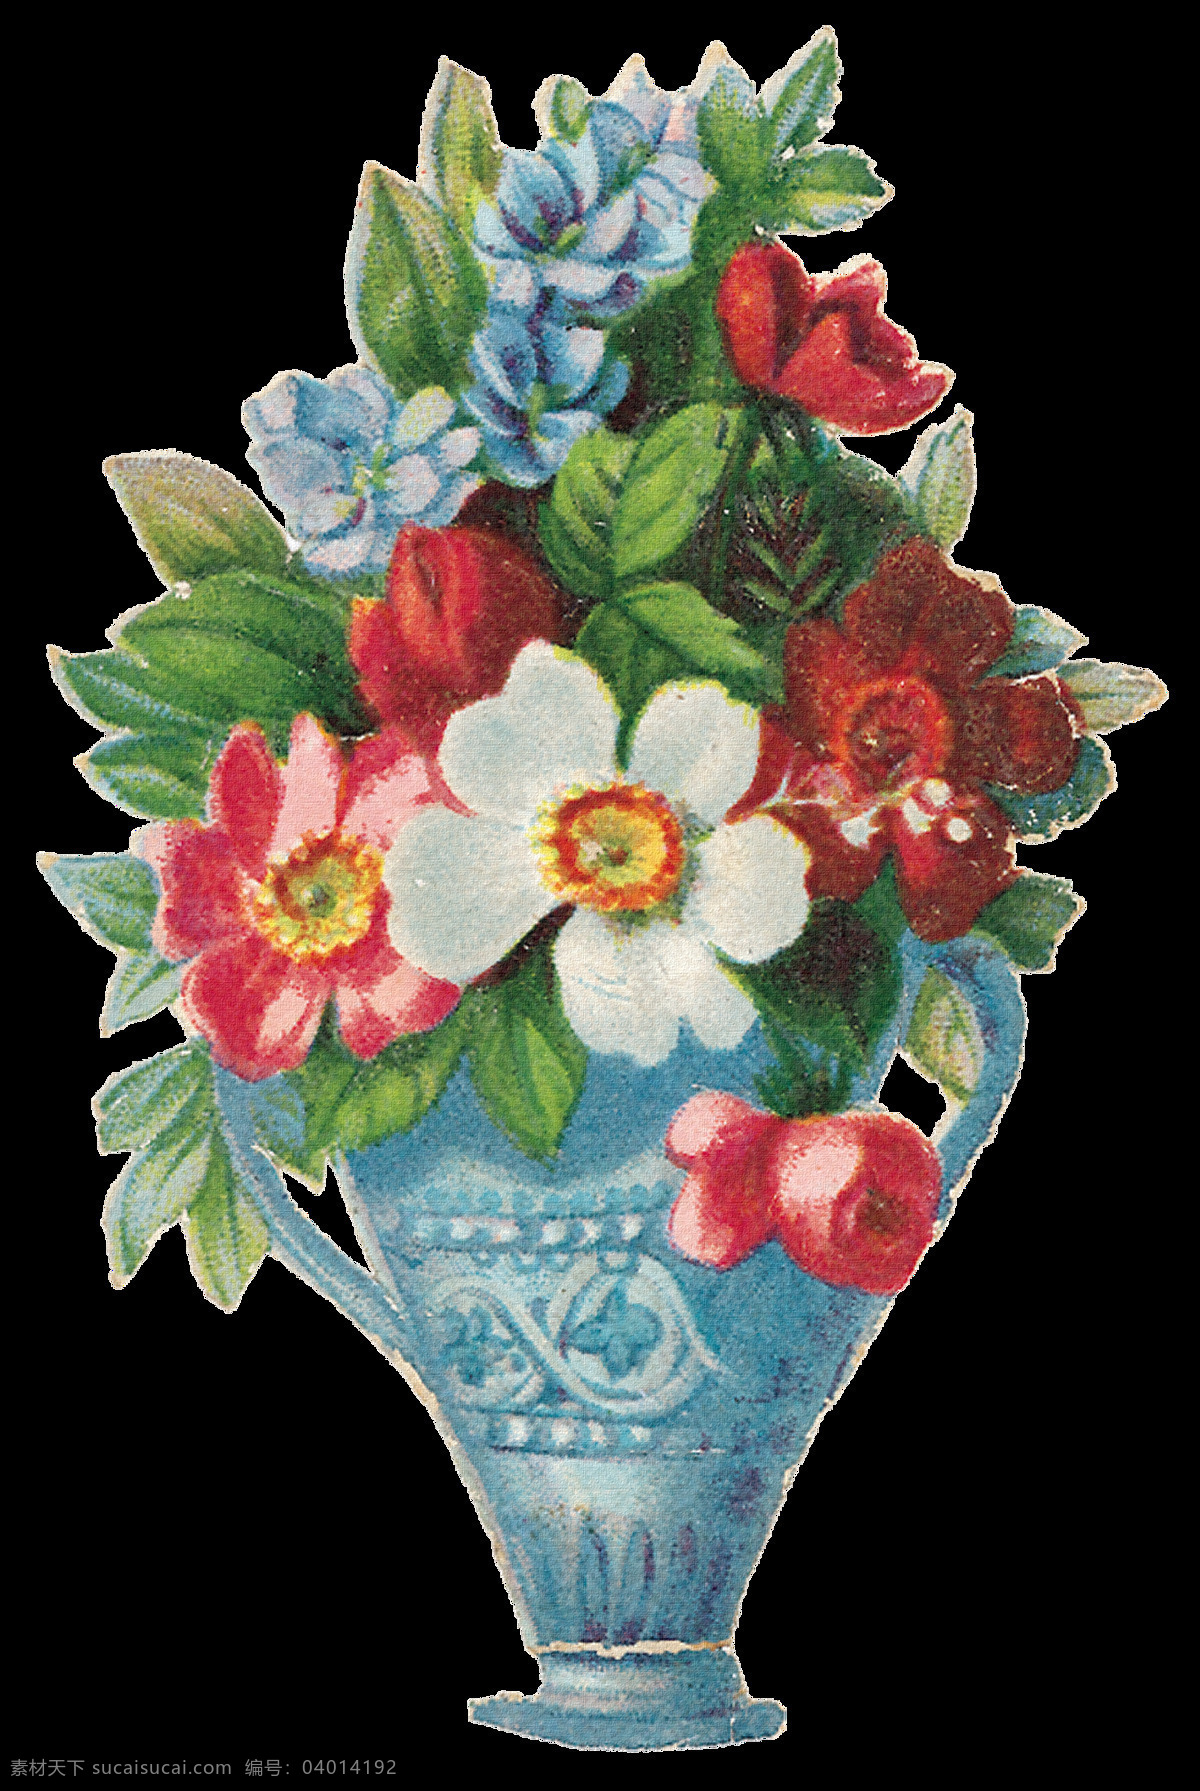 复古花瓶 复古 花朵 设计素材 模板下载 复古花朵 手绘花朵 静物花卉 绘画花朵 绘画书法 文化艺术 花朵素材